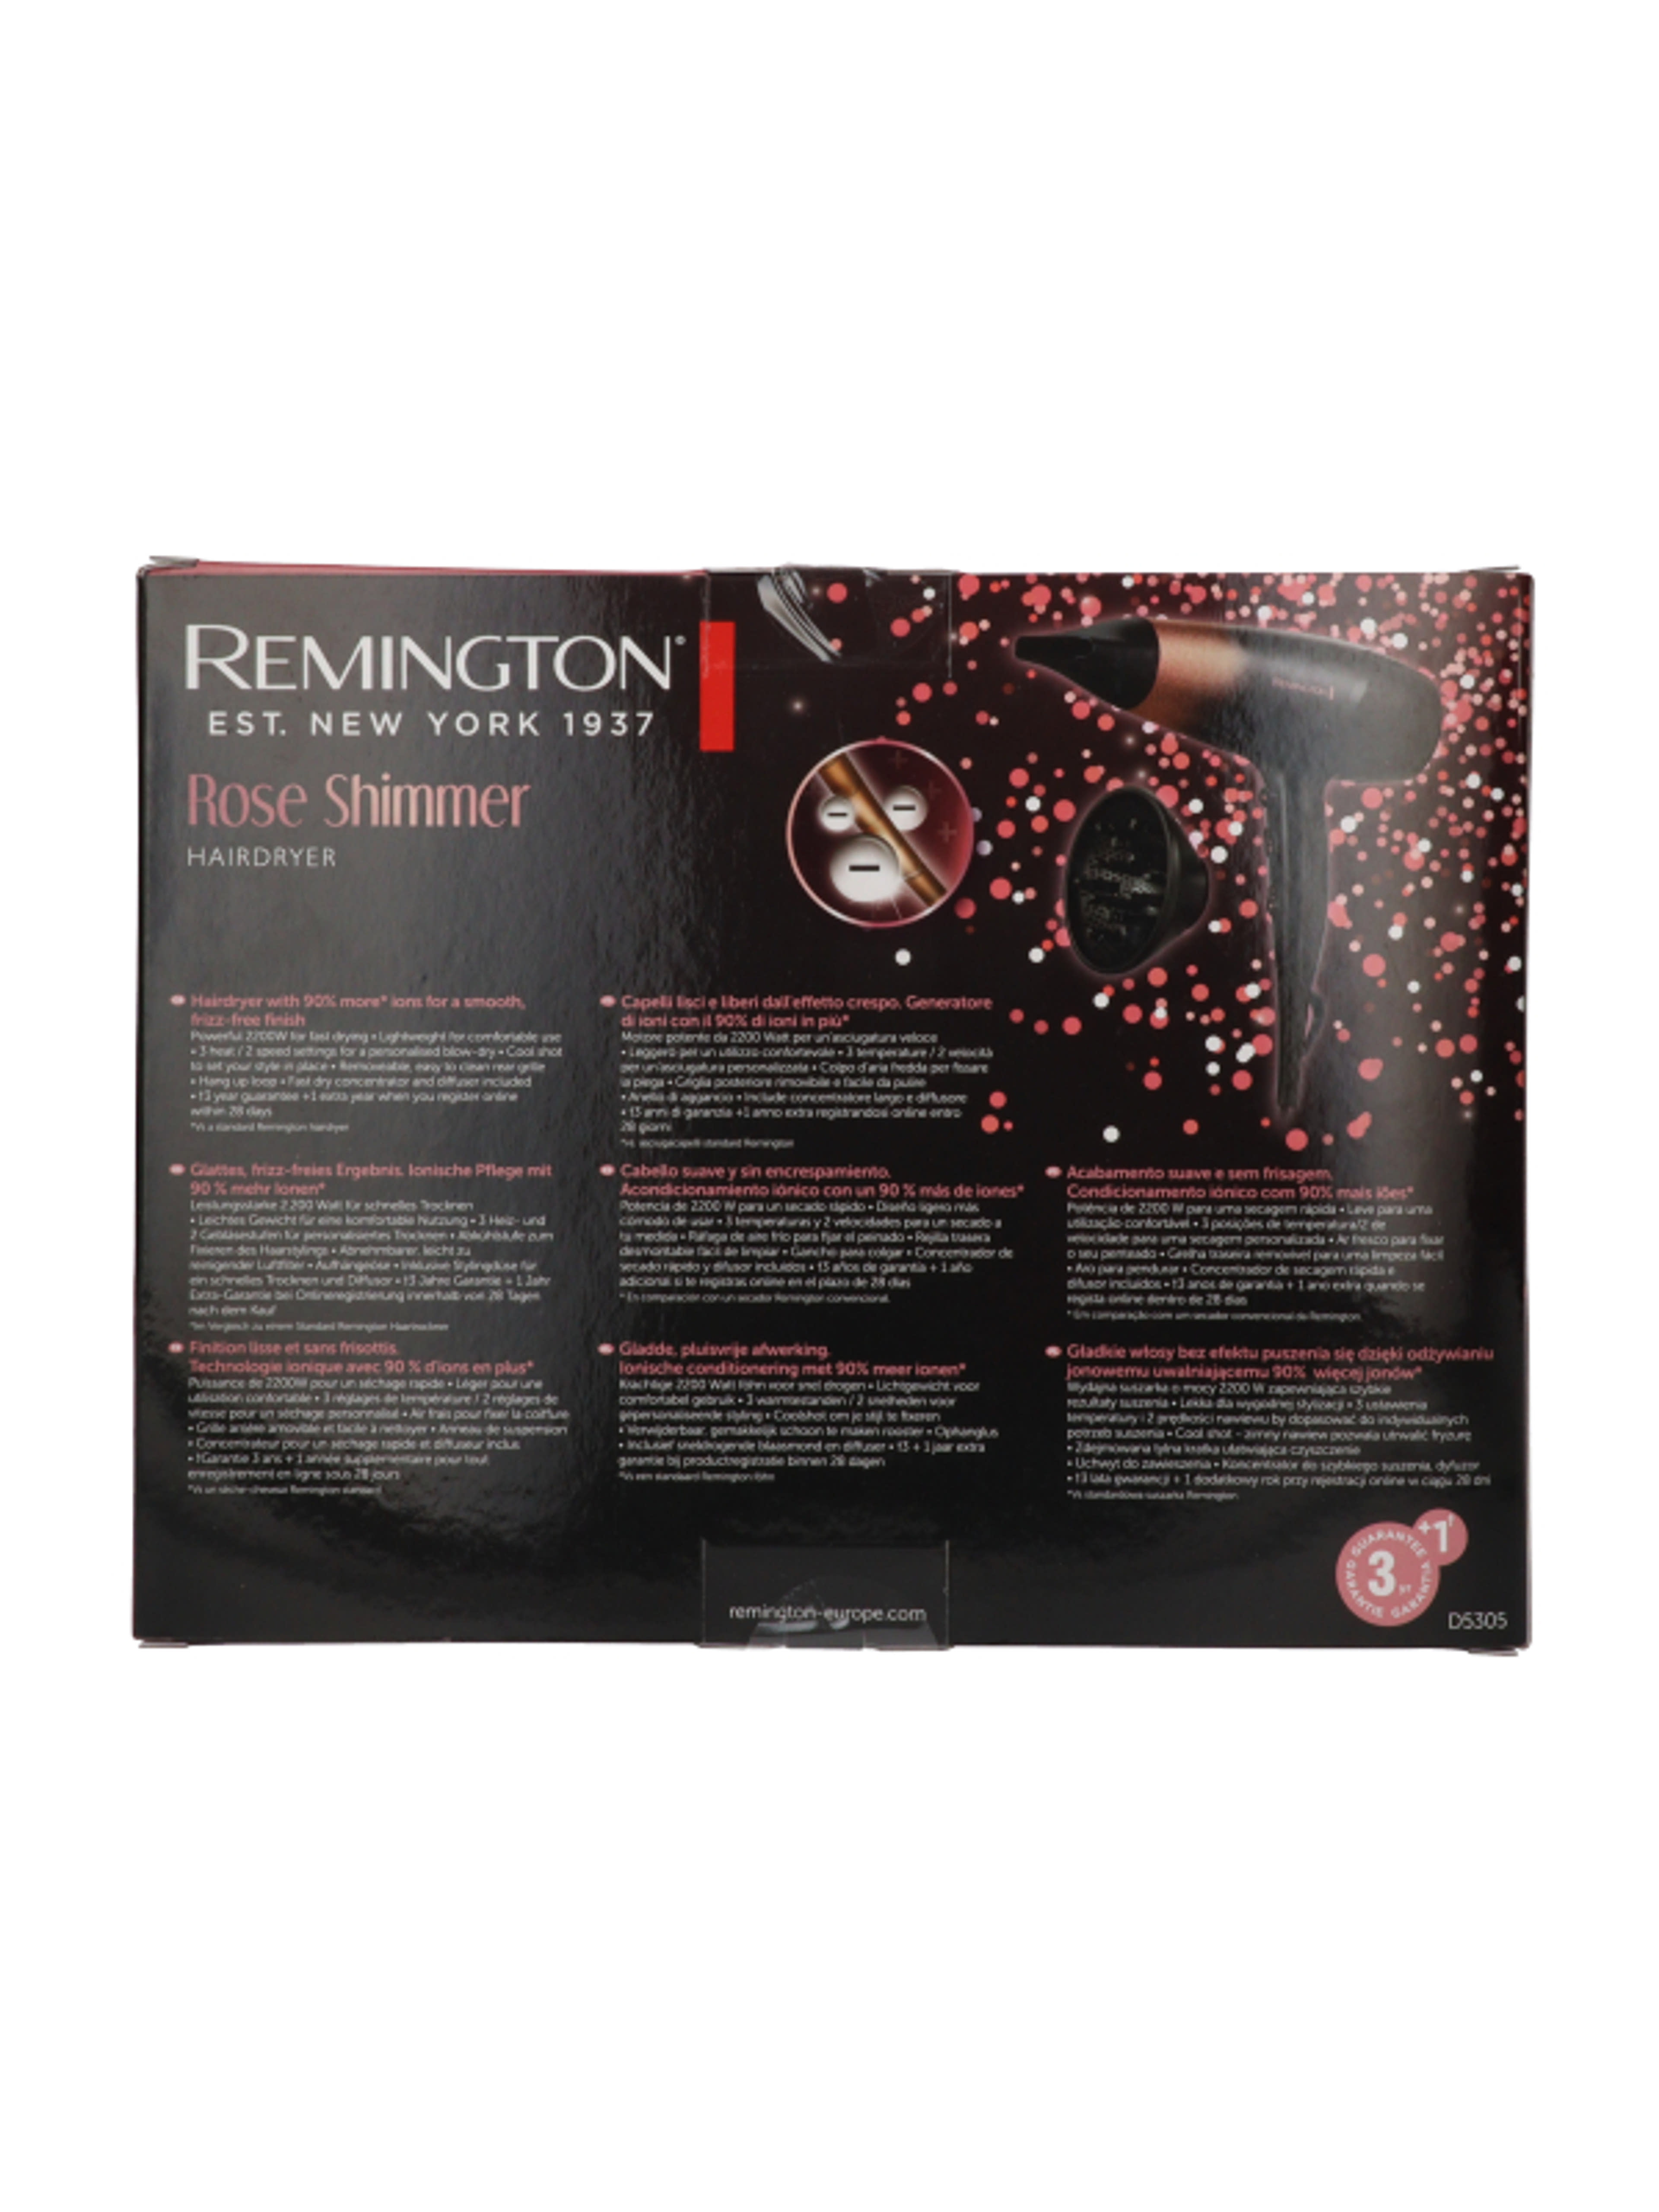 Remington D5305 Rose Shimmer hajszárító - 1 db-3